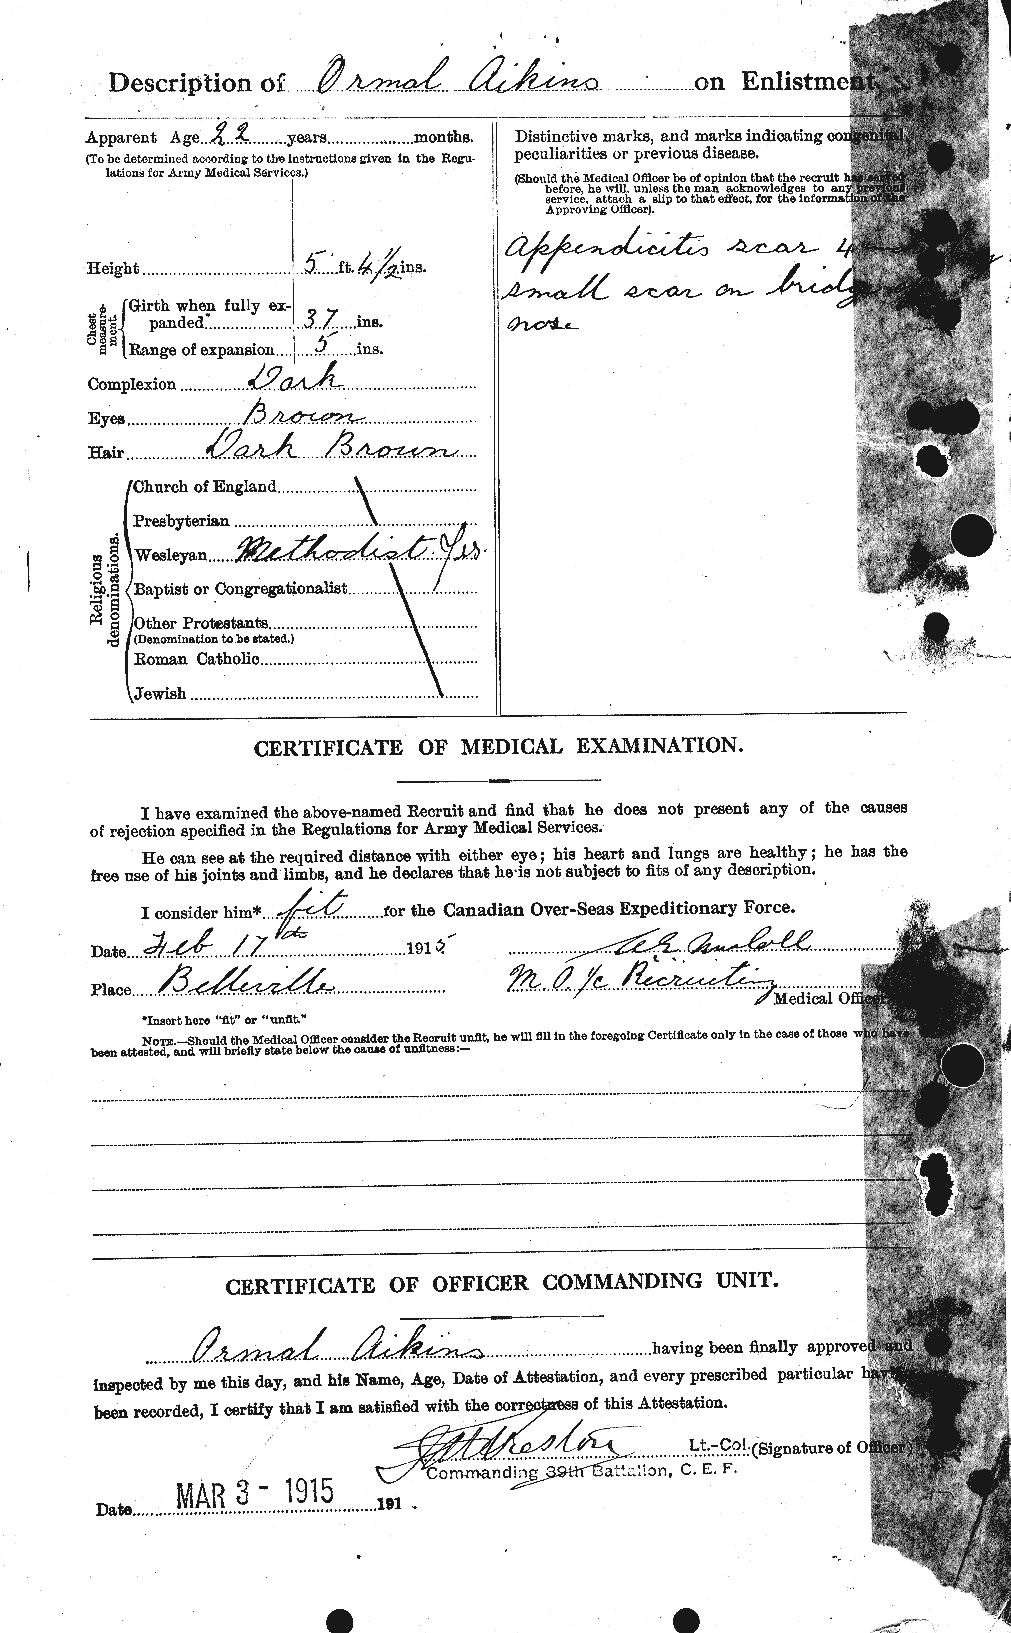 Dossiers du Personnel de la Première Guerre mondiale - CEC 204184b